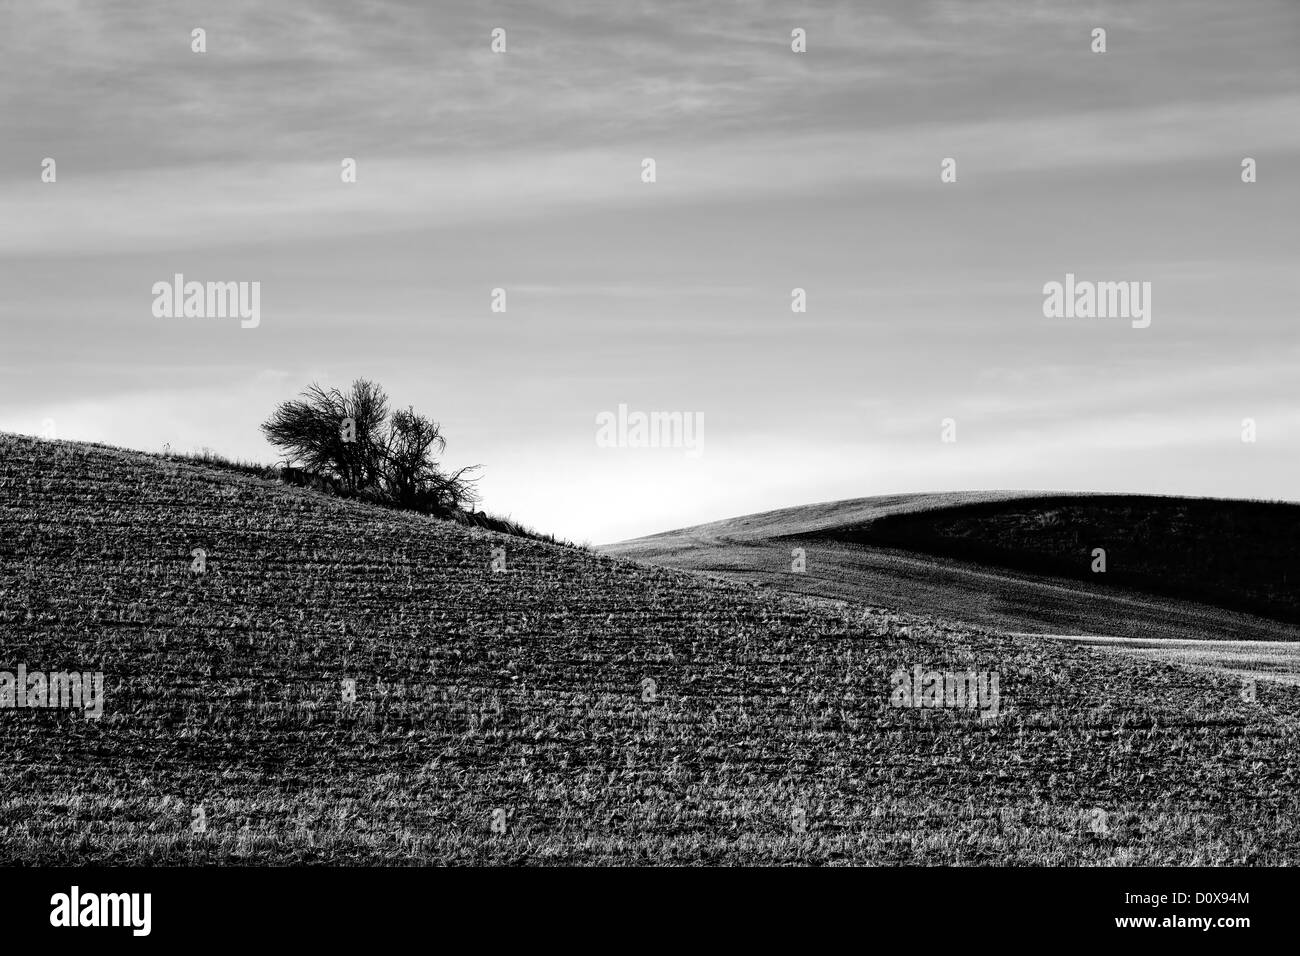 Une image en noir et blanc d'un bush solitaire au milieu d'un champ agricole. Banque D'Images